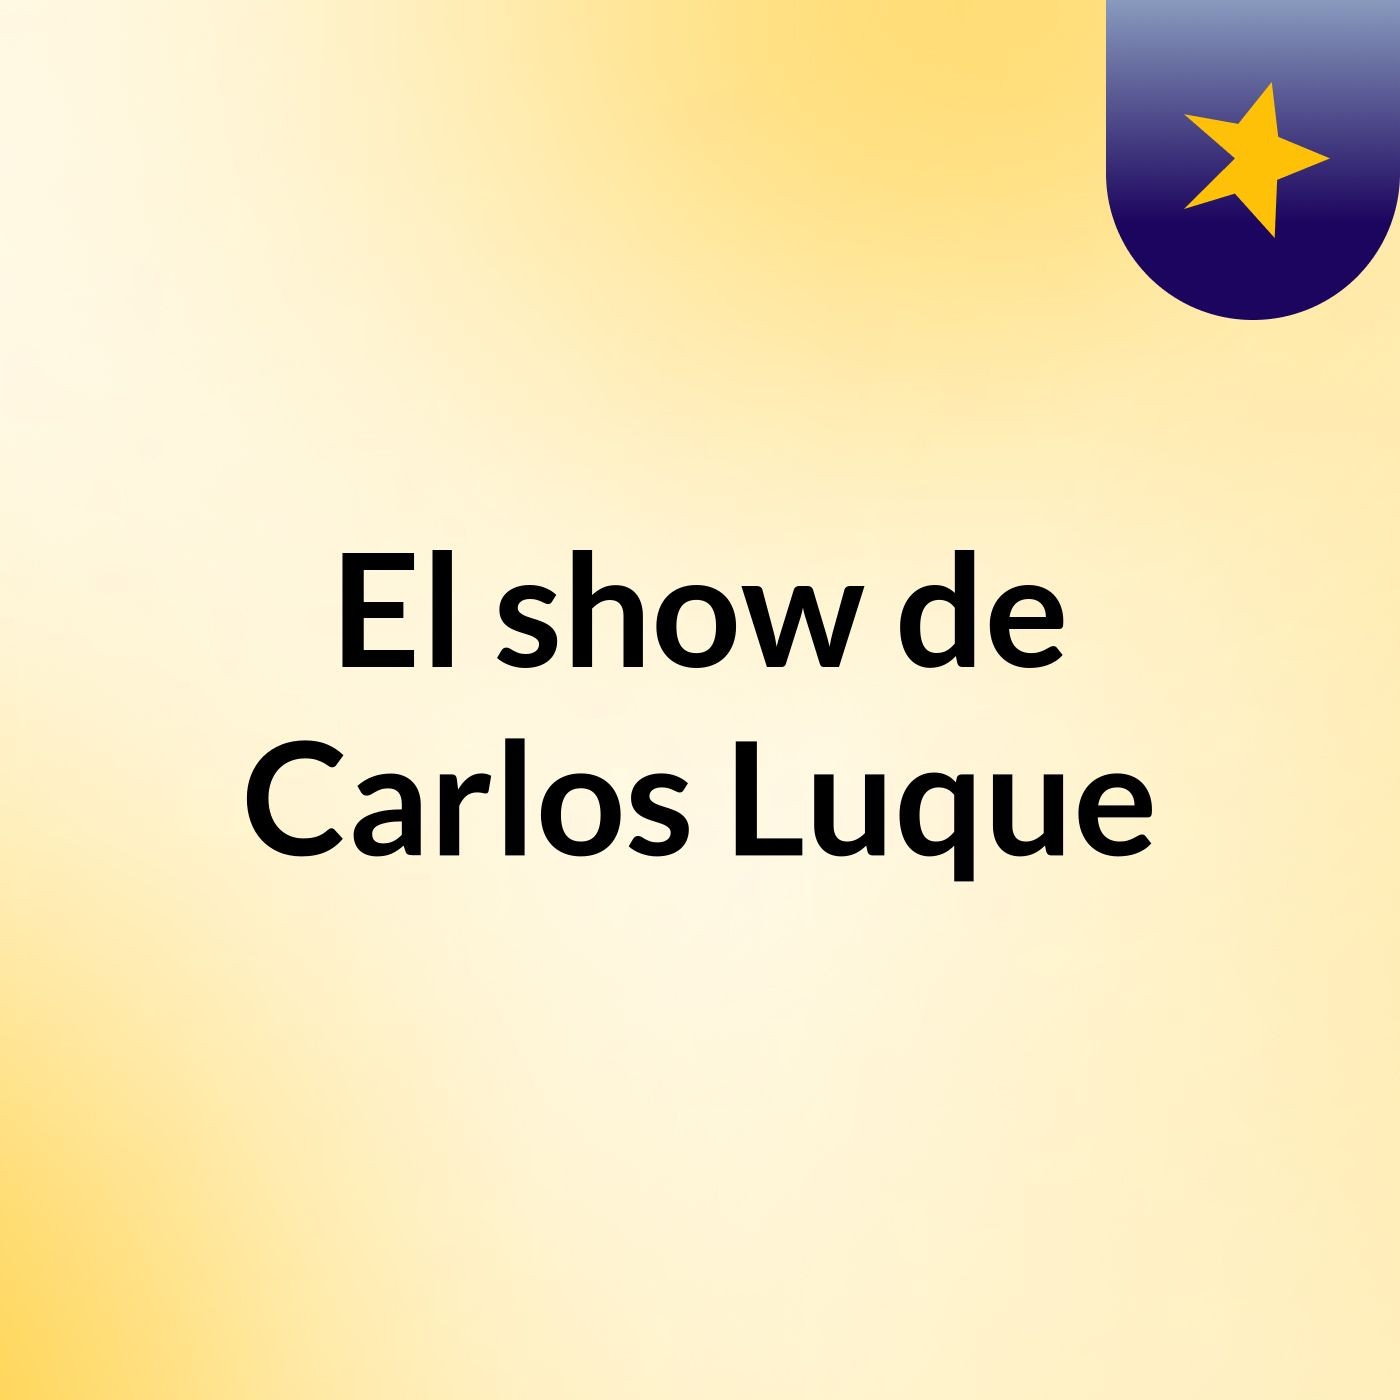 El show de Carlos Luque